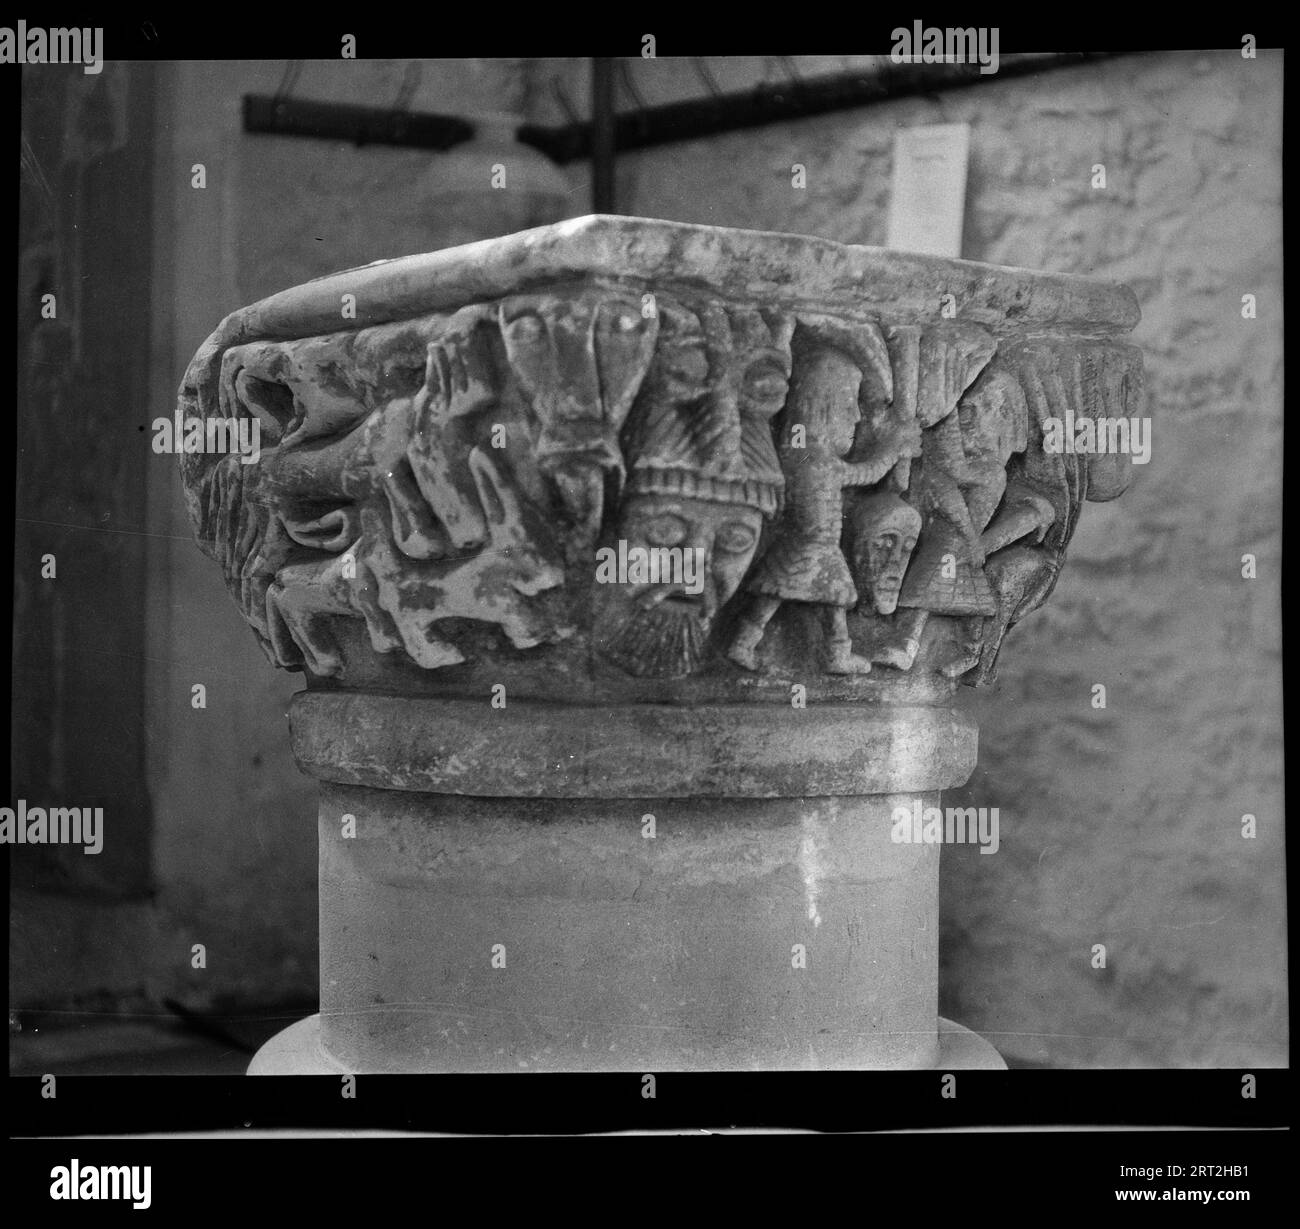 St. Mary's Church, Luppitt, Luppitt, East Devon, Devon, 1940-1949. Detail eines frühen normannischen oder spätsächsischen Schriftkörpers mit einer geschnitzten quadratischen Schüssel auf einem zylindrischen Schaft, dessen obere Zentimeter originell und der Rest modern erscheinen. Der Winkel des Bildes zeigt zwei Seiten der Schüssel, eine mit der Szene von zwei Männern, die mit Schilden und Schwertern kämpfen, während die andere wilde Tiere zeigt. Ein maskiertes Gesicht an der Ecke ist deutlicher zu sehen und trennt die beiden Szenen. Die Kirche hat normannischen Ursprung und wurde im 13. Und 14. Jahrhundert umgebaut. Stockfoto